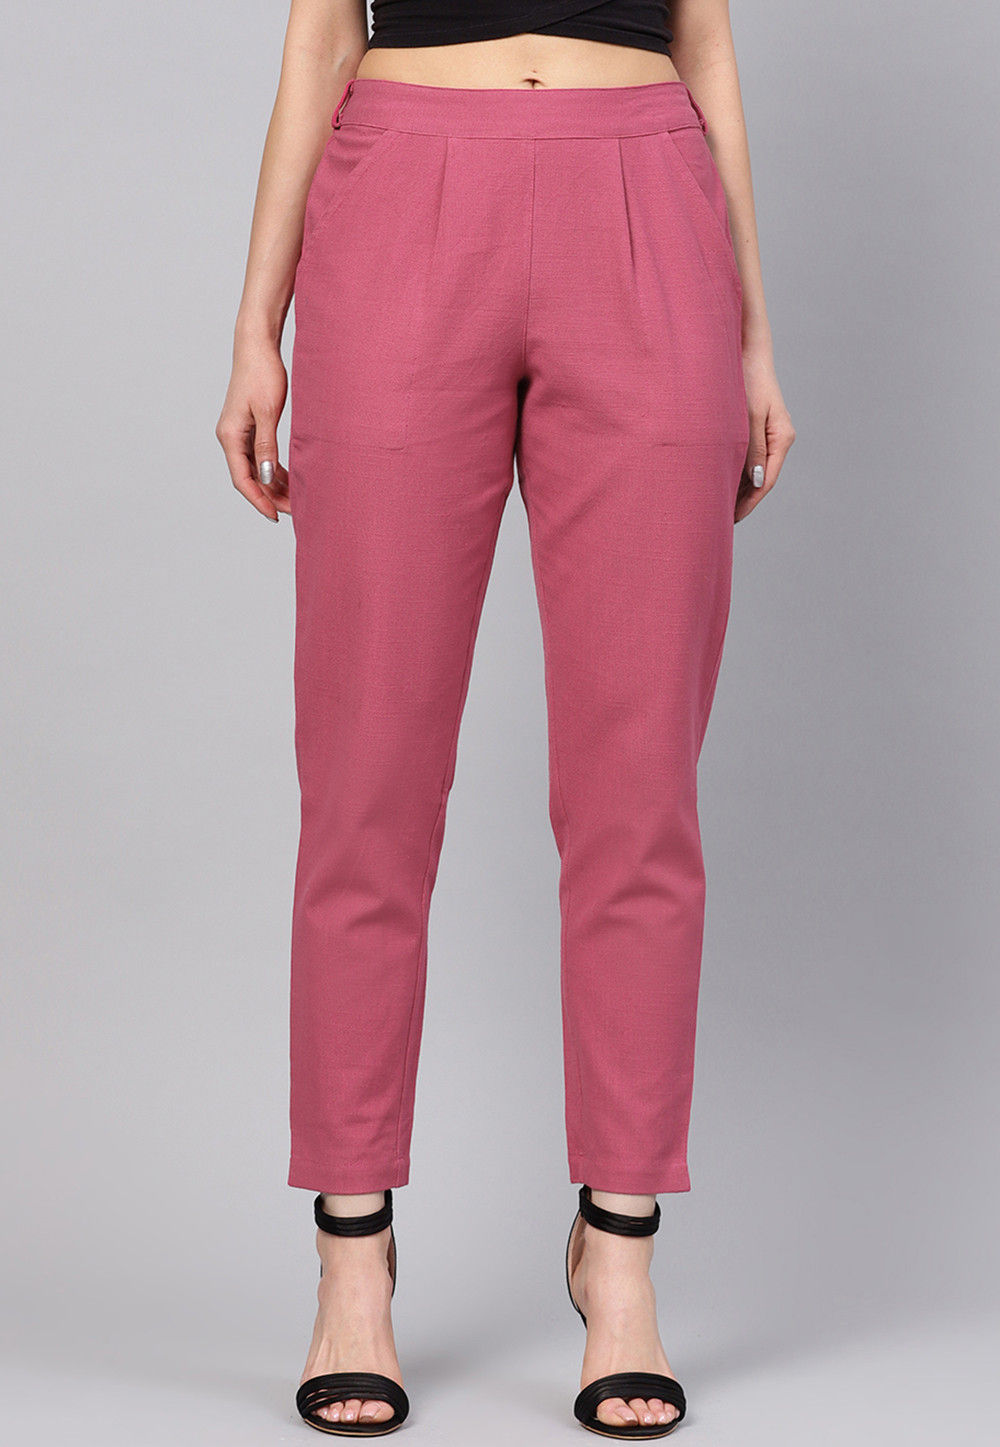 Buy Pink Trousers  Pants for Women by DJ  C Online  Ajiocom